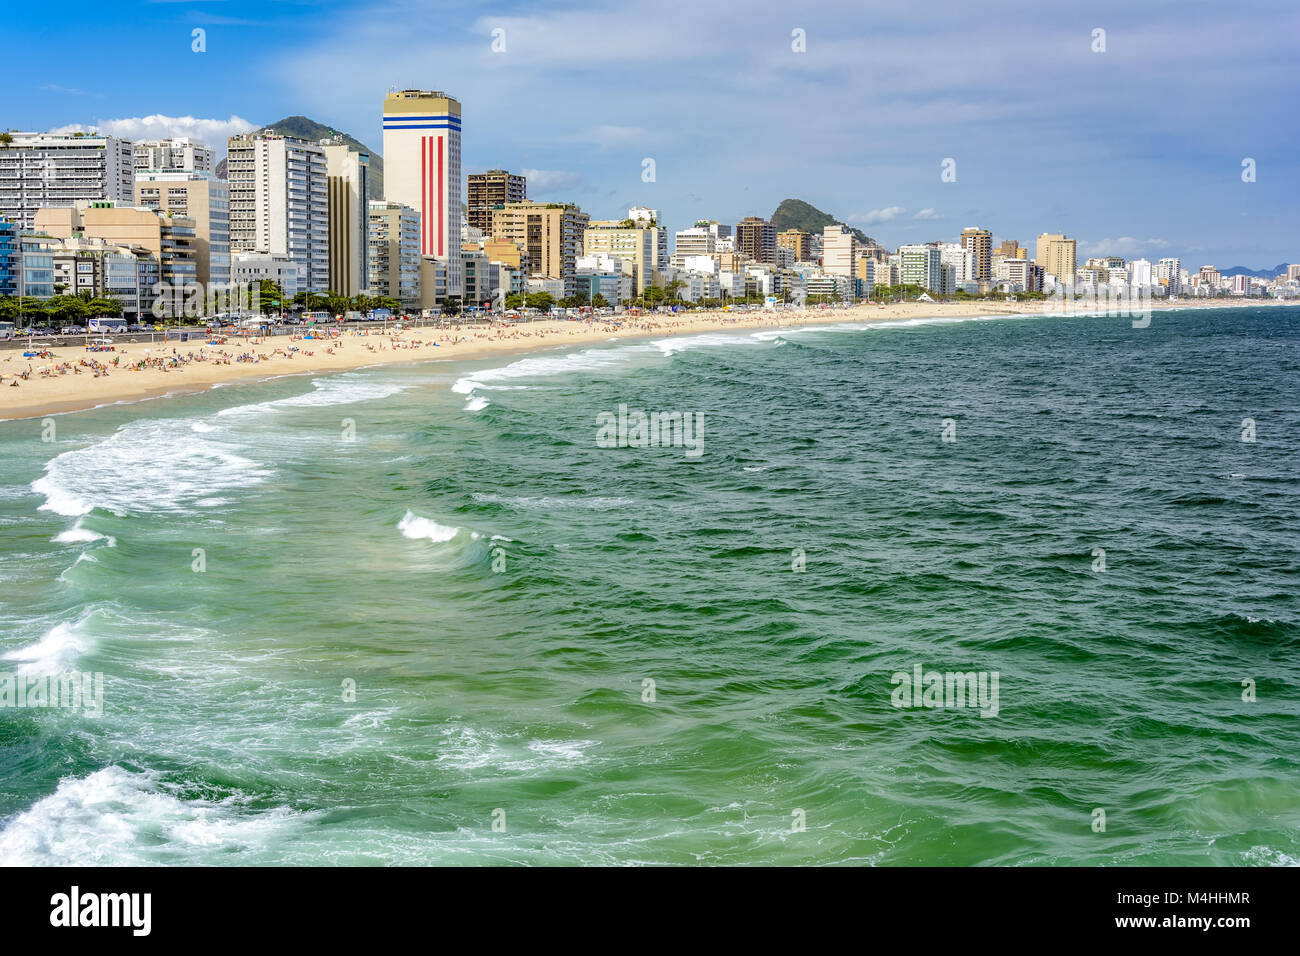 Leblon beach in Rio de Janeiro Stock Photo